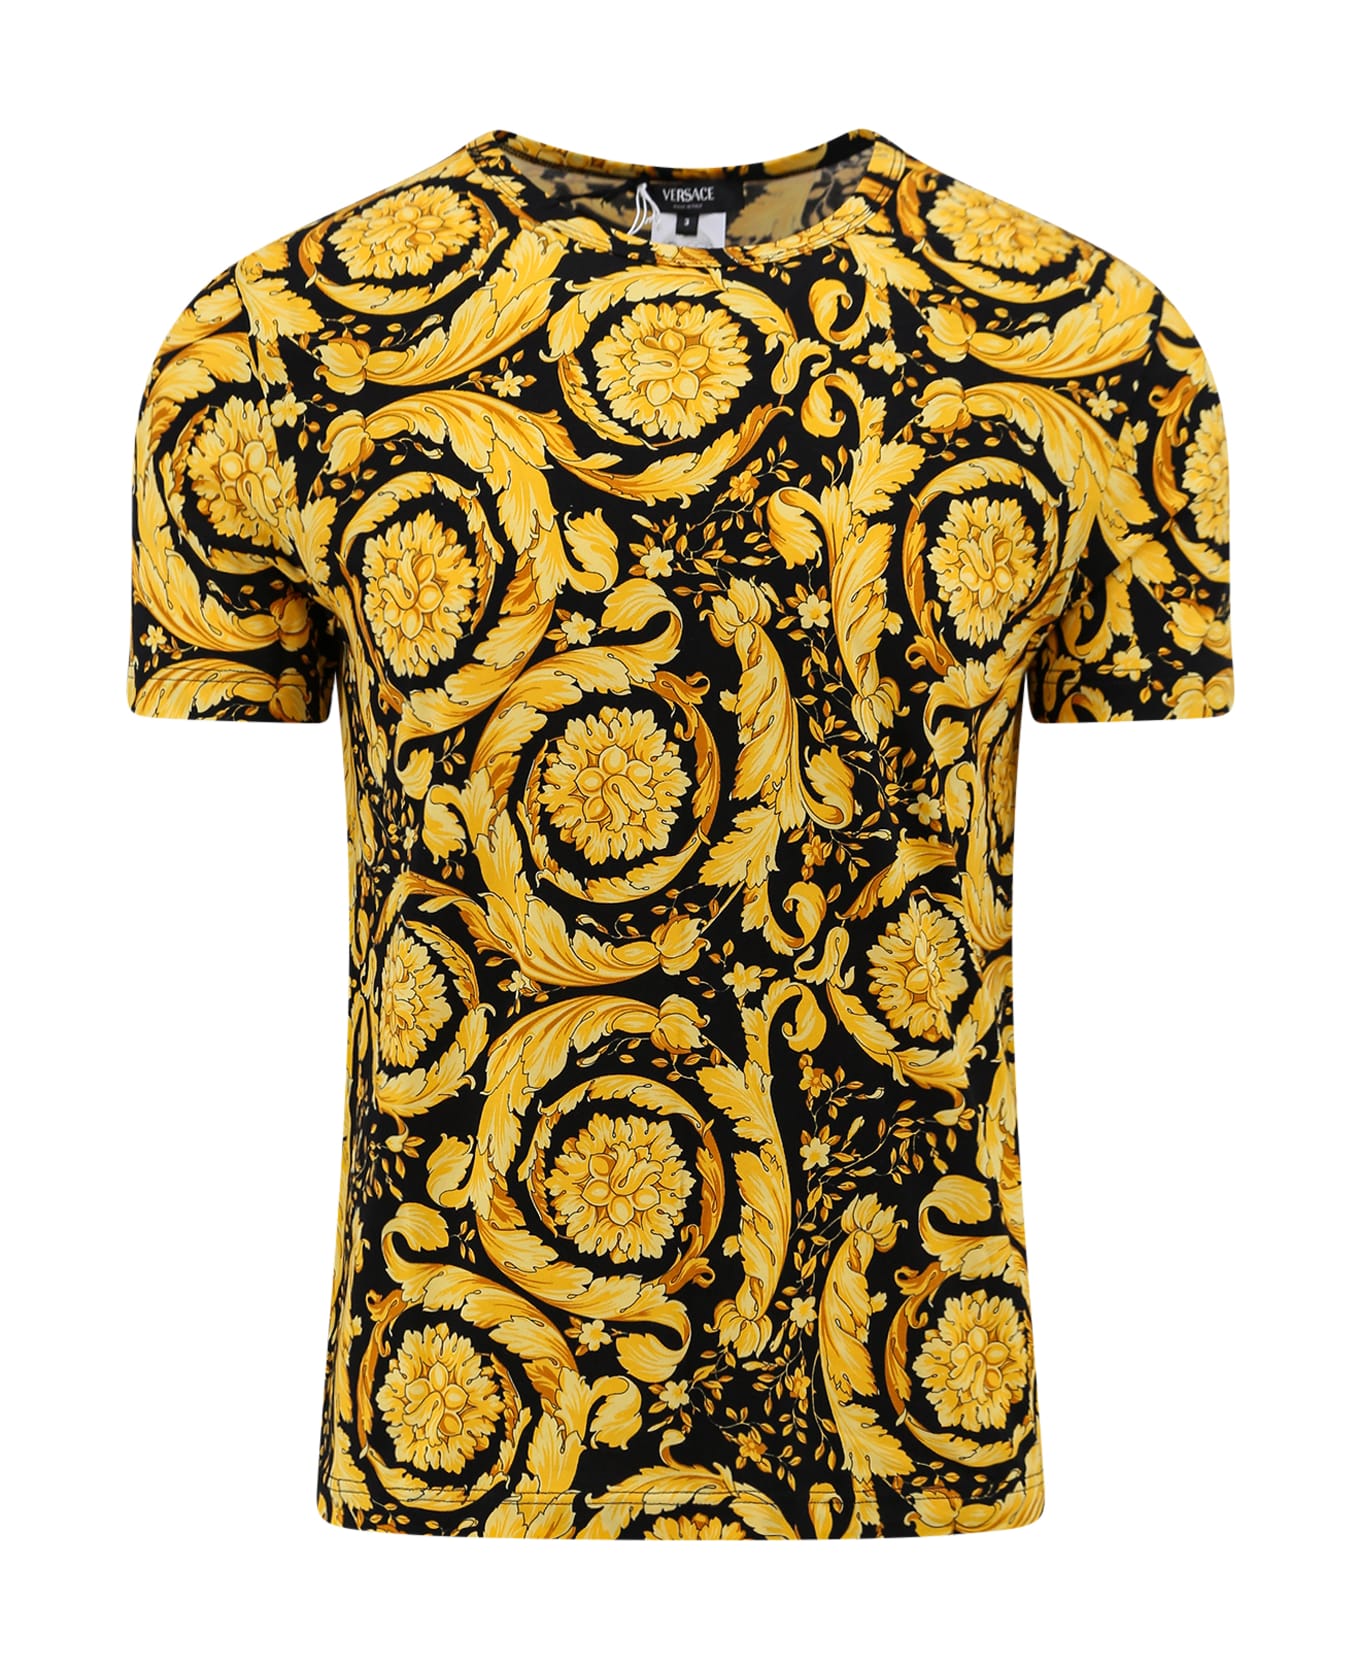 Versace T-shirt - Golden シャツ